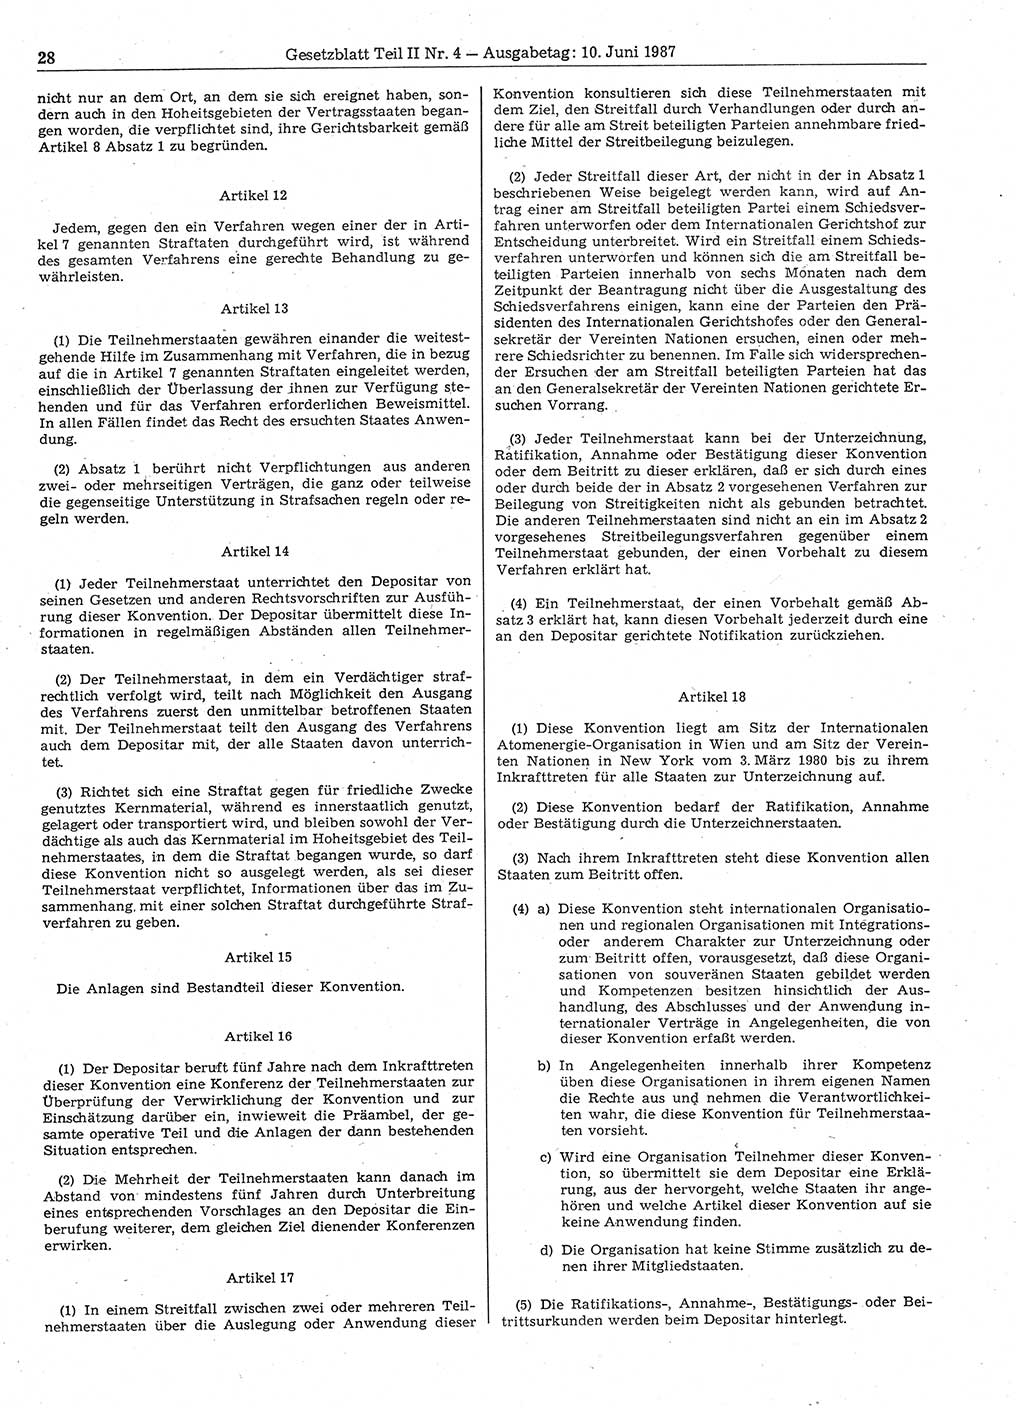 Gesetzblatt (GBl.) der Deutschen Demokratischen Republik (DDR) Teil ⅠⅠ 1987, Seite 28 (GBl. DDR ⅠⅠ 1987, S. 28)